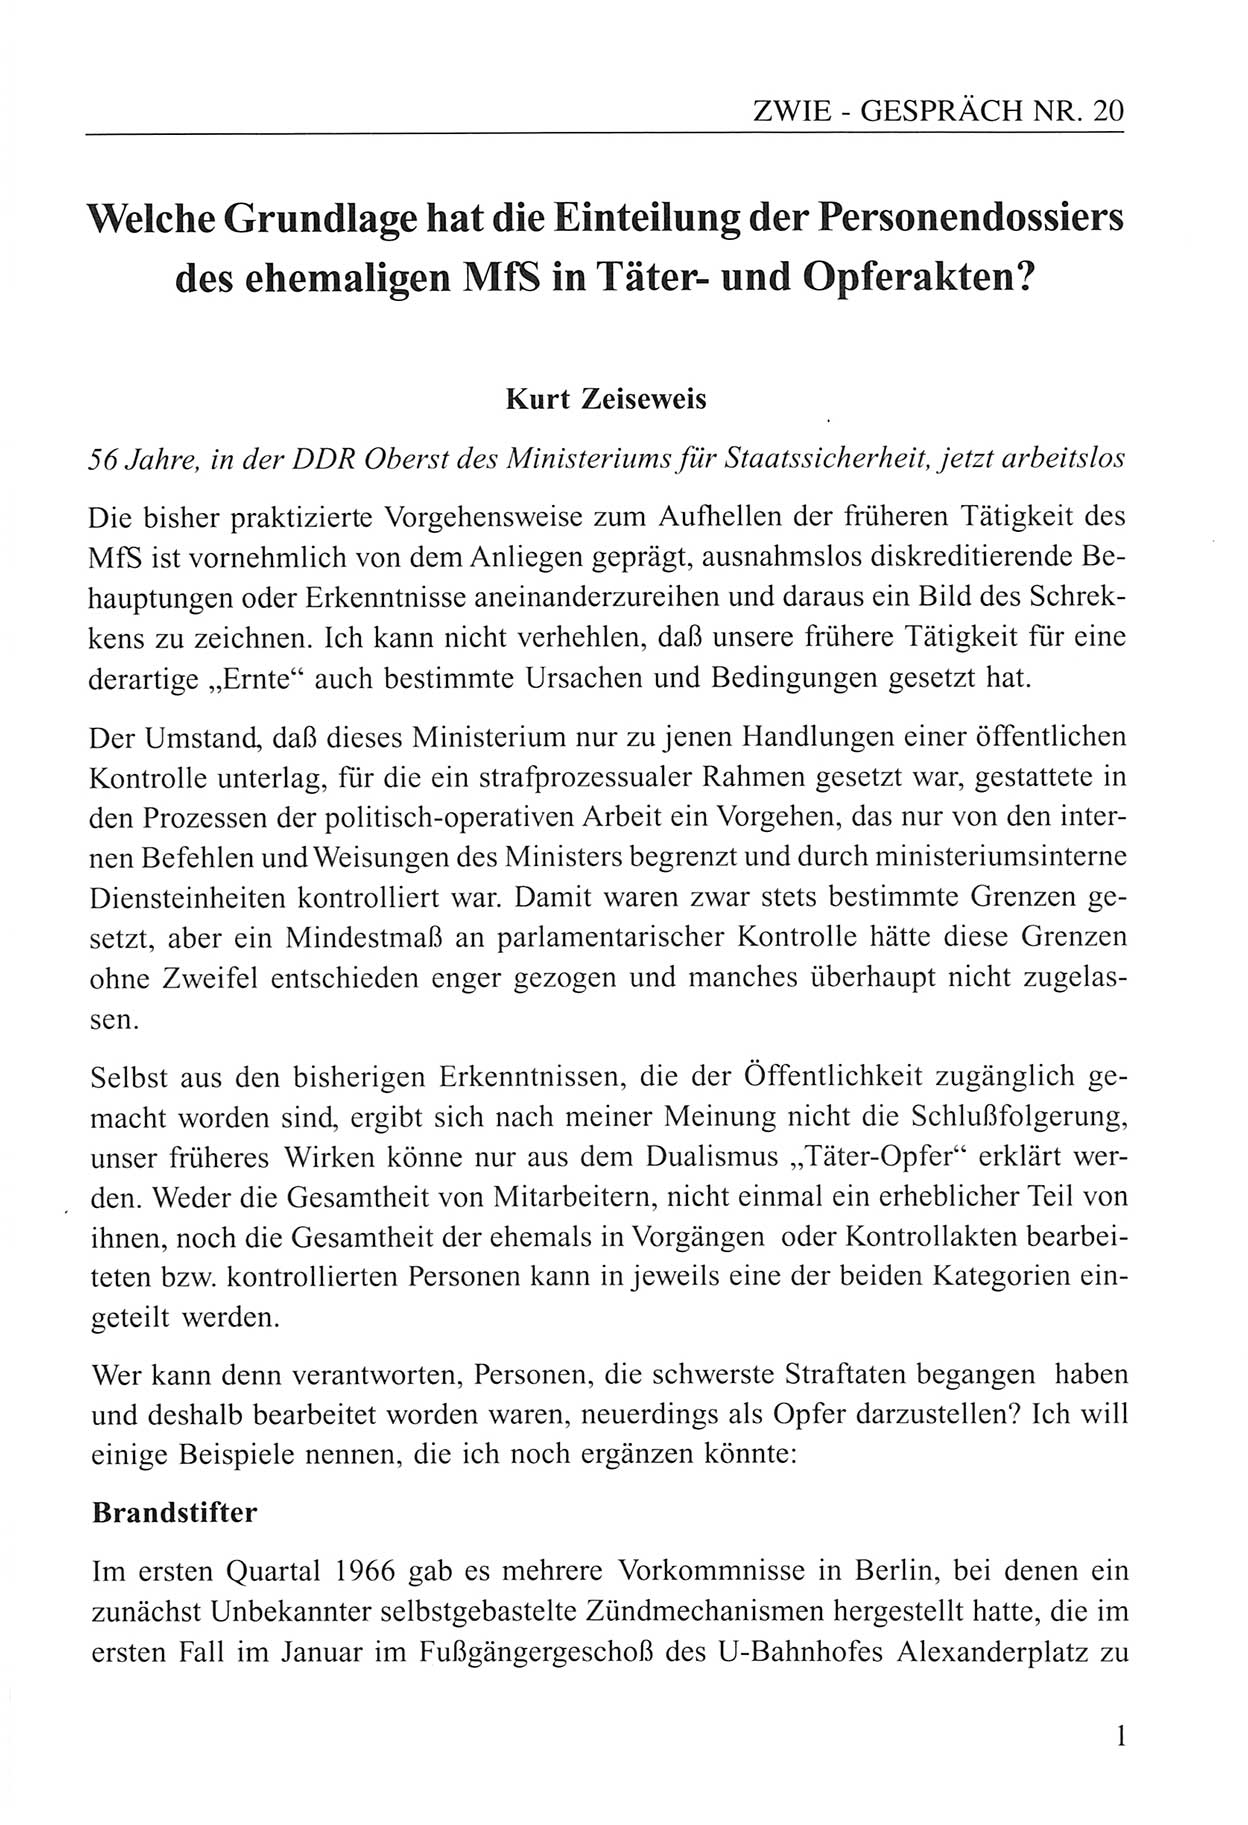 Zwie-Gespräch, Beiträge zum Umgang mit der Staatssicherheits-Vergangenheit [Deutsche Demokratische Republik (DDR)], Ausgabe Nr. 20, Berlin 1994, Seite 1 (Zwie-Gespr. Ausg. 20 1994, S. 1)